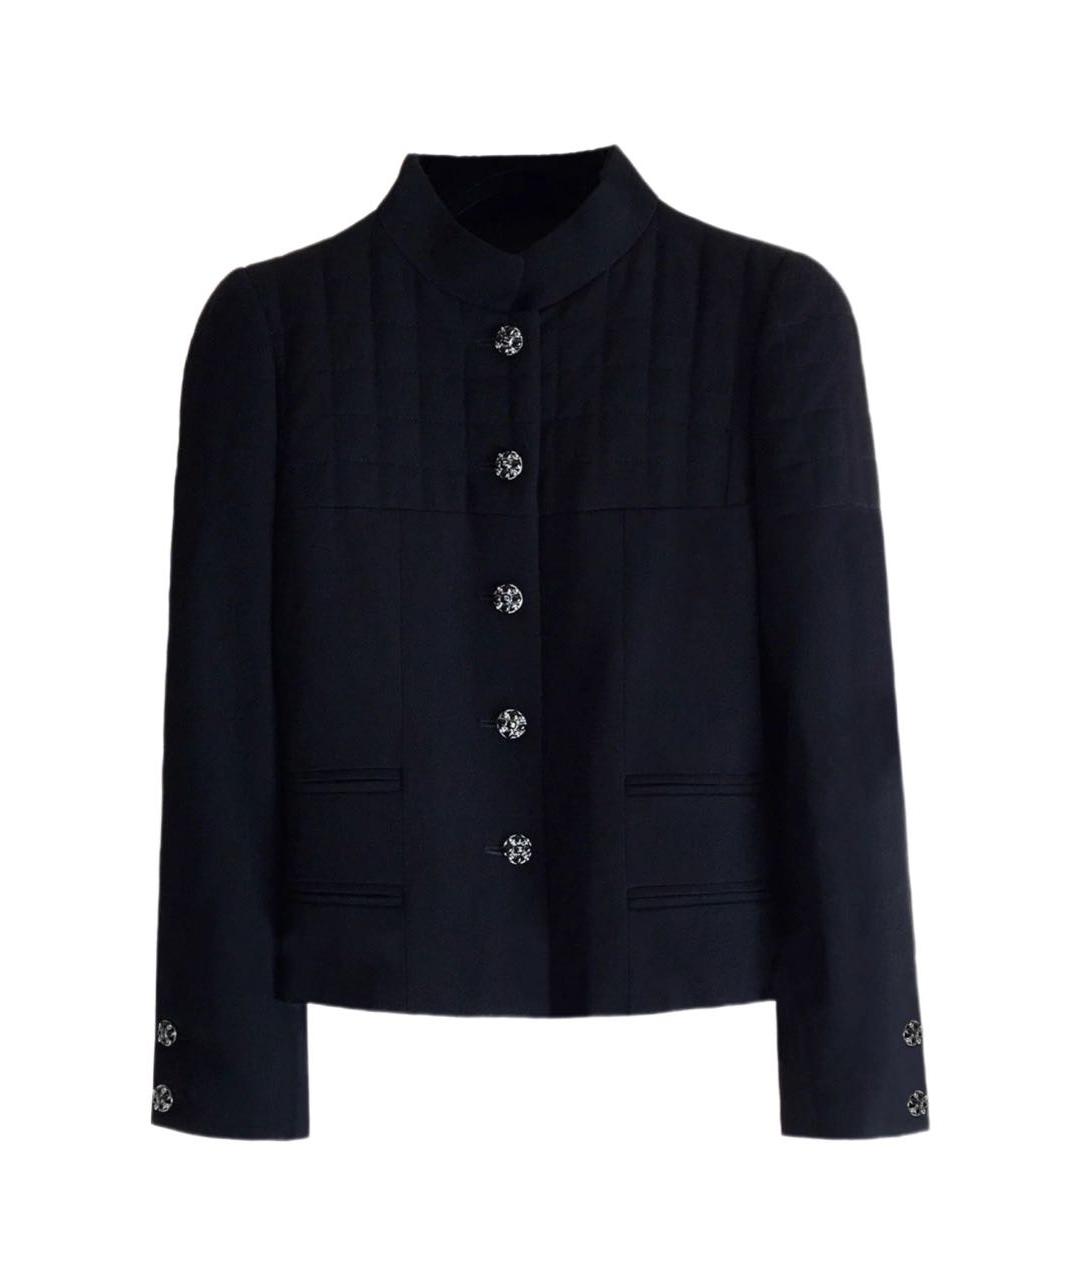 CHANEL PRE-OWNED Черный шерстяной жакет/пиджак, фото 1